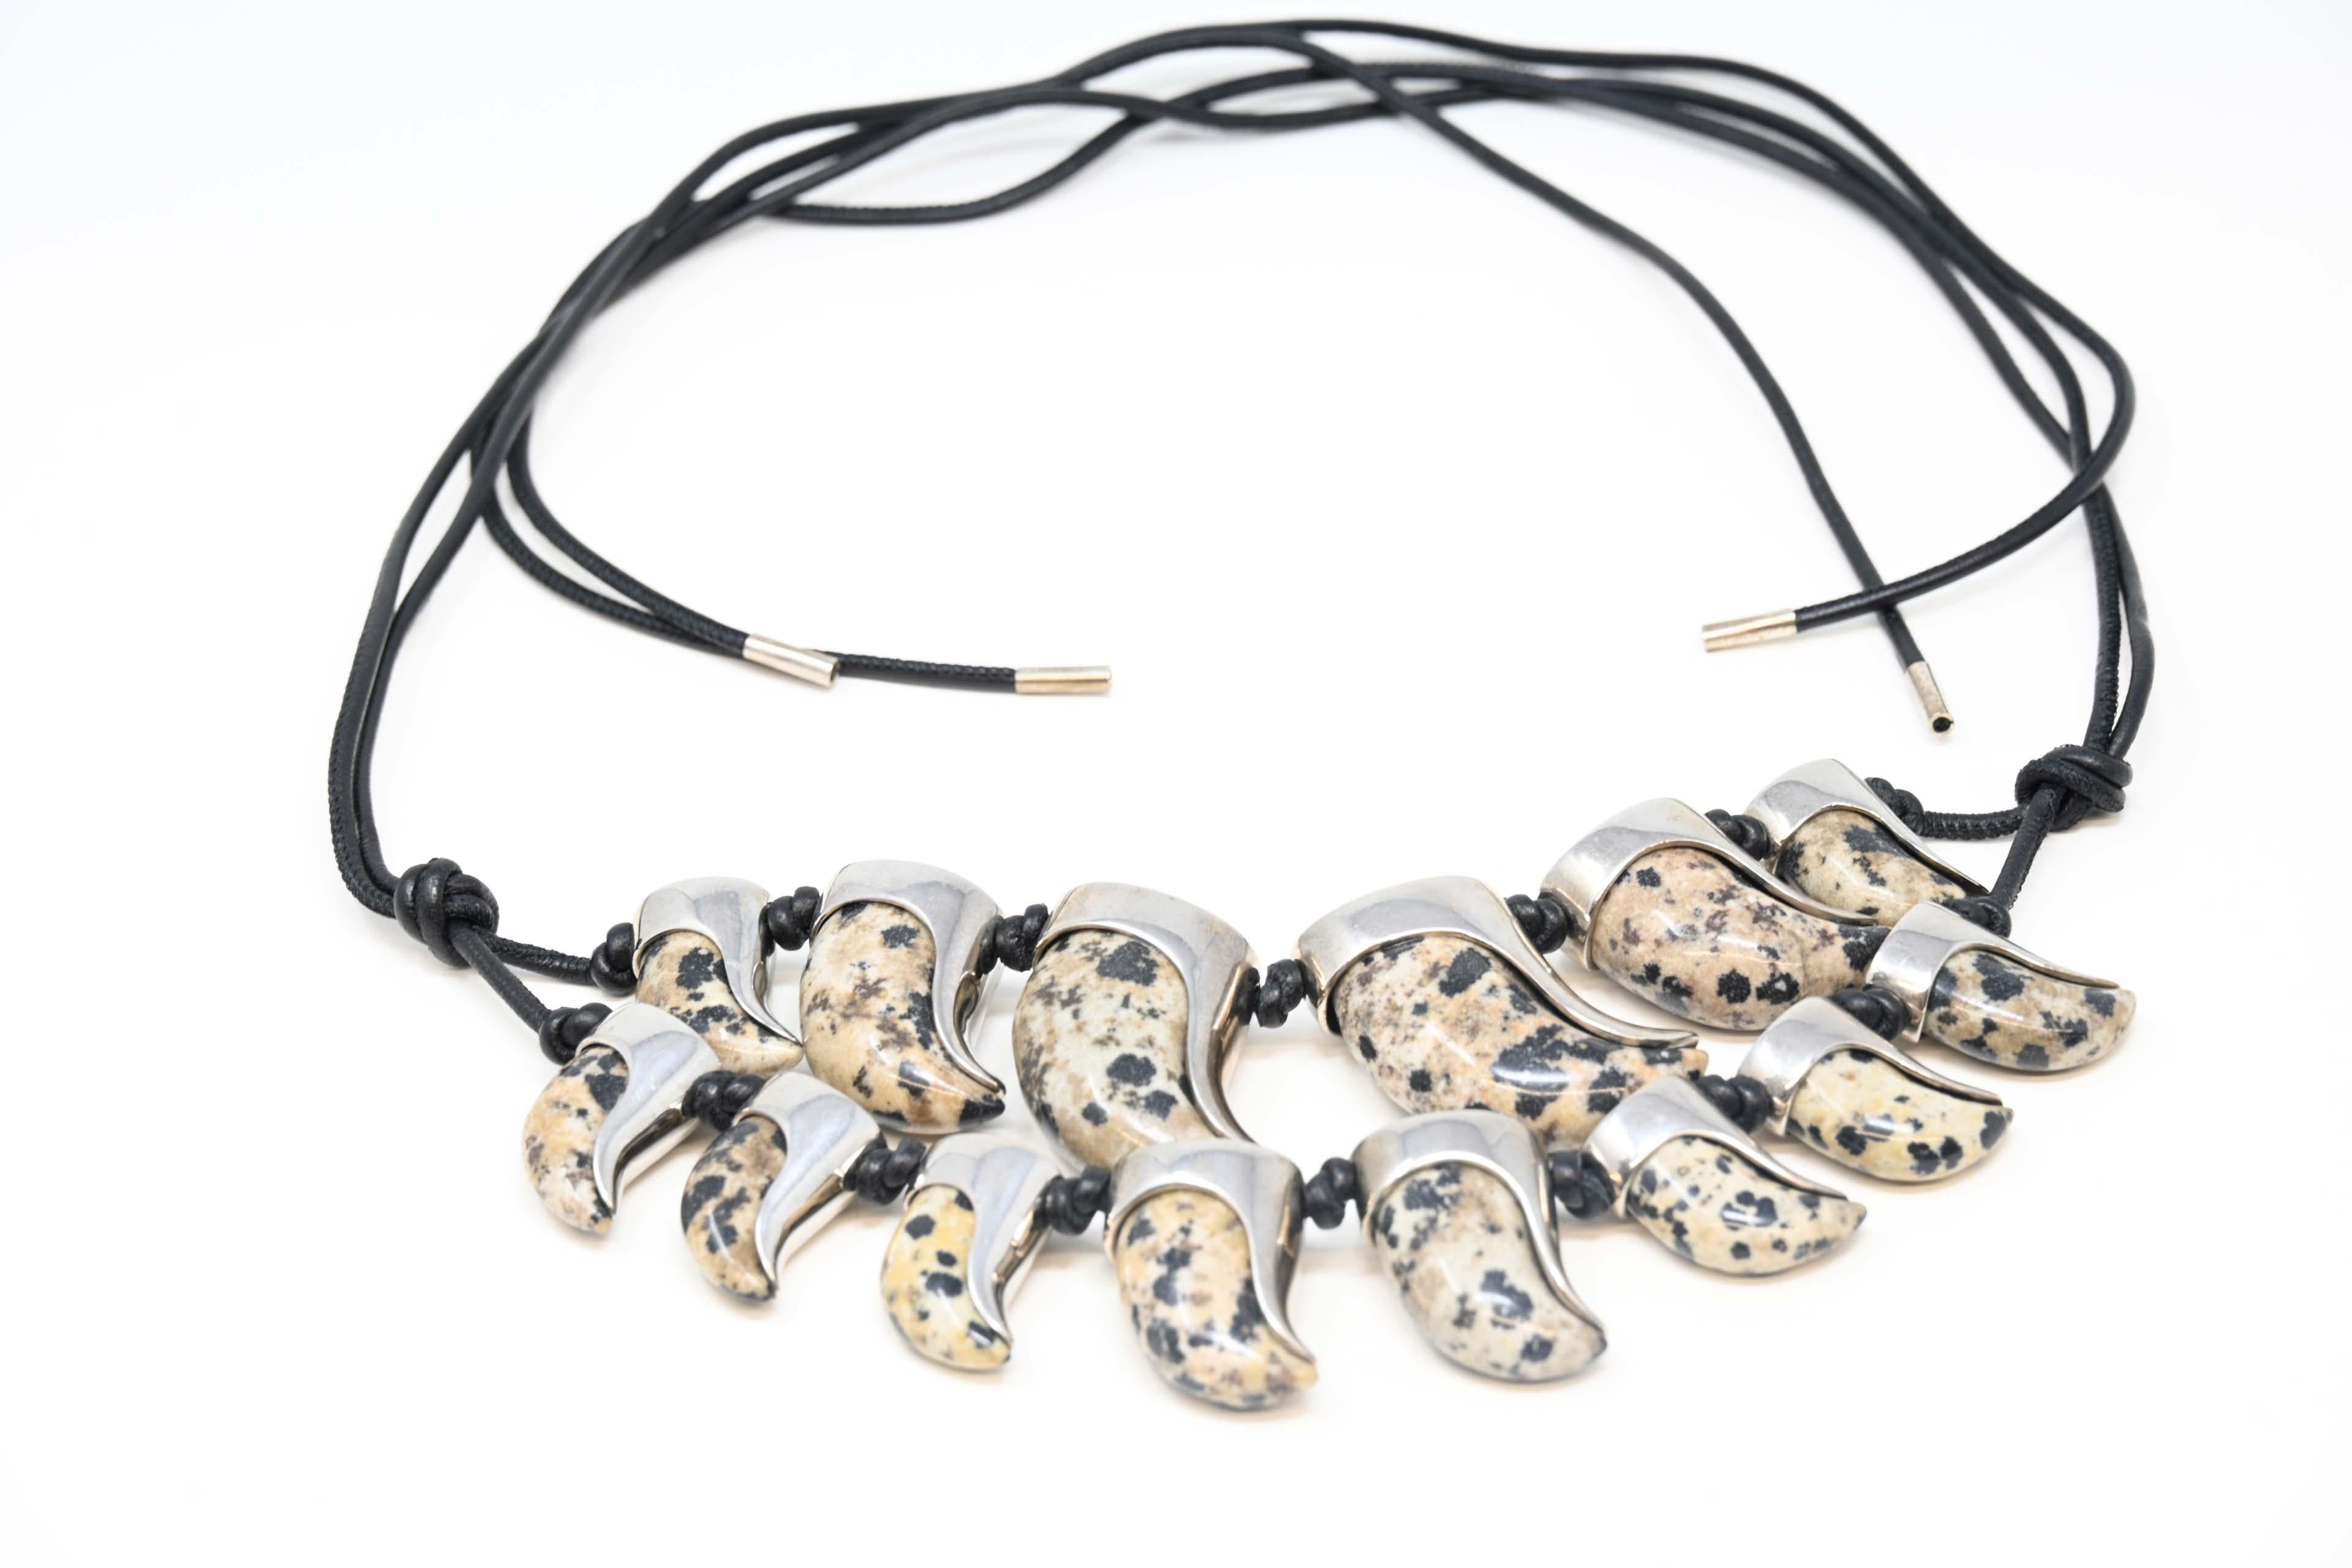 Balenciaga Frühjahr/Sommer 2010 Laufsteg-Kollektion von Nicolas Ghesquiere Haifischzahn-Design Halskette. Mit einem doppelten Lederseil mit dem Knoten für eine verstellbare Passform. Zahnanhänger aus silberfarbenem Metall mit Zähnen in Marmoroptik.